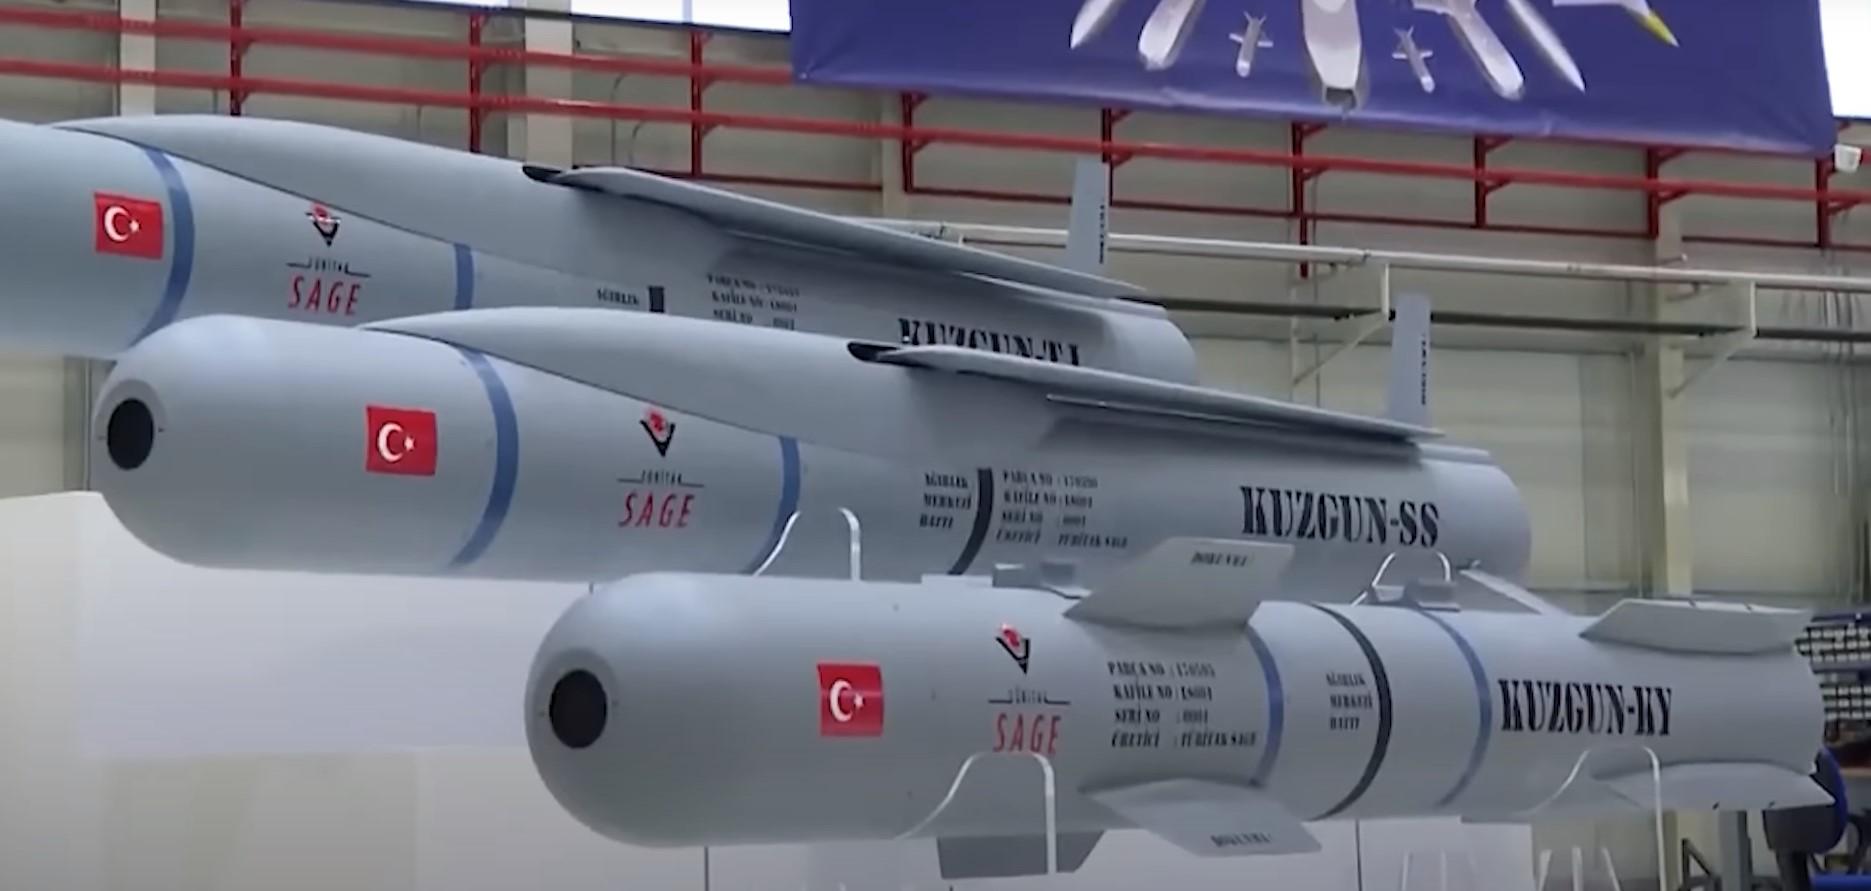 Turska započela proizvodnju municije nove generacije